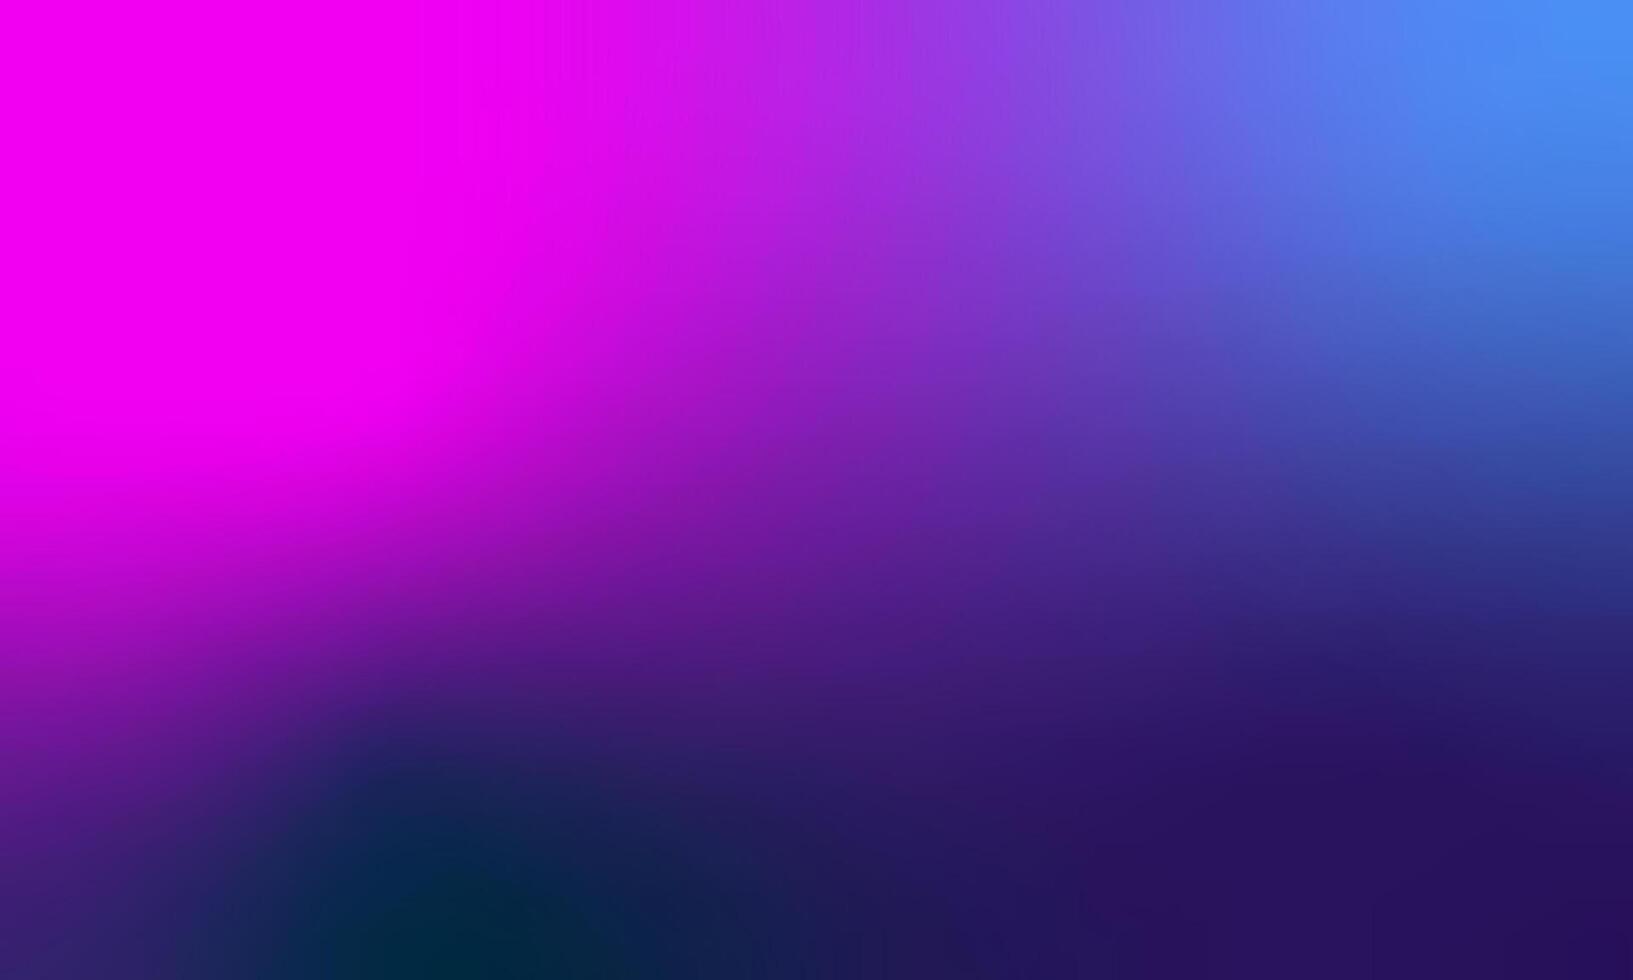 blå och lila lutning abstrakt suddig bakgrund vektor